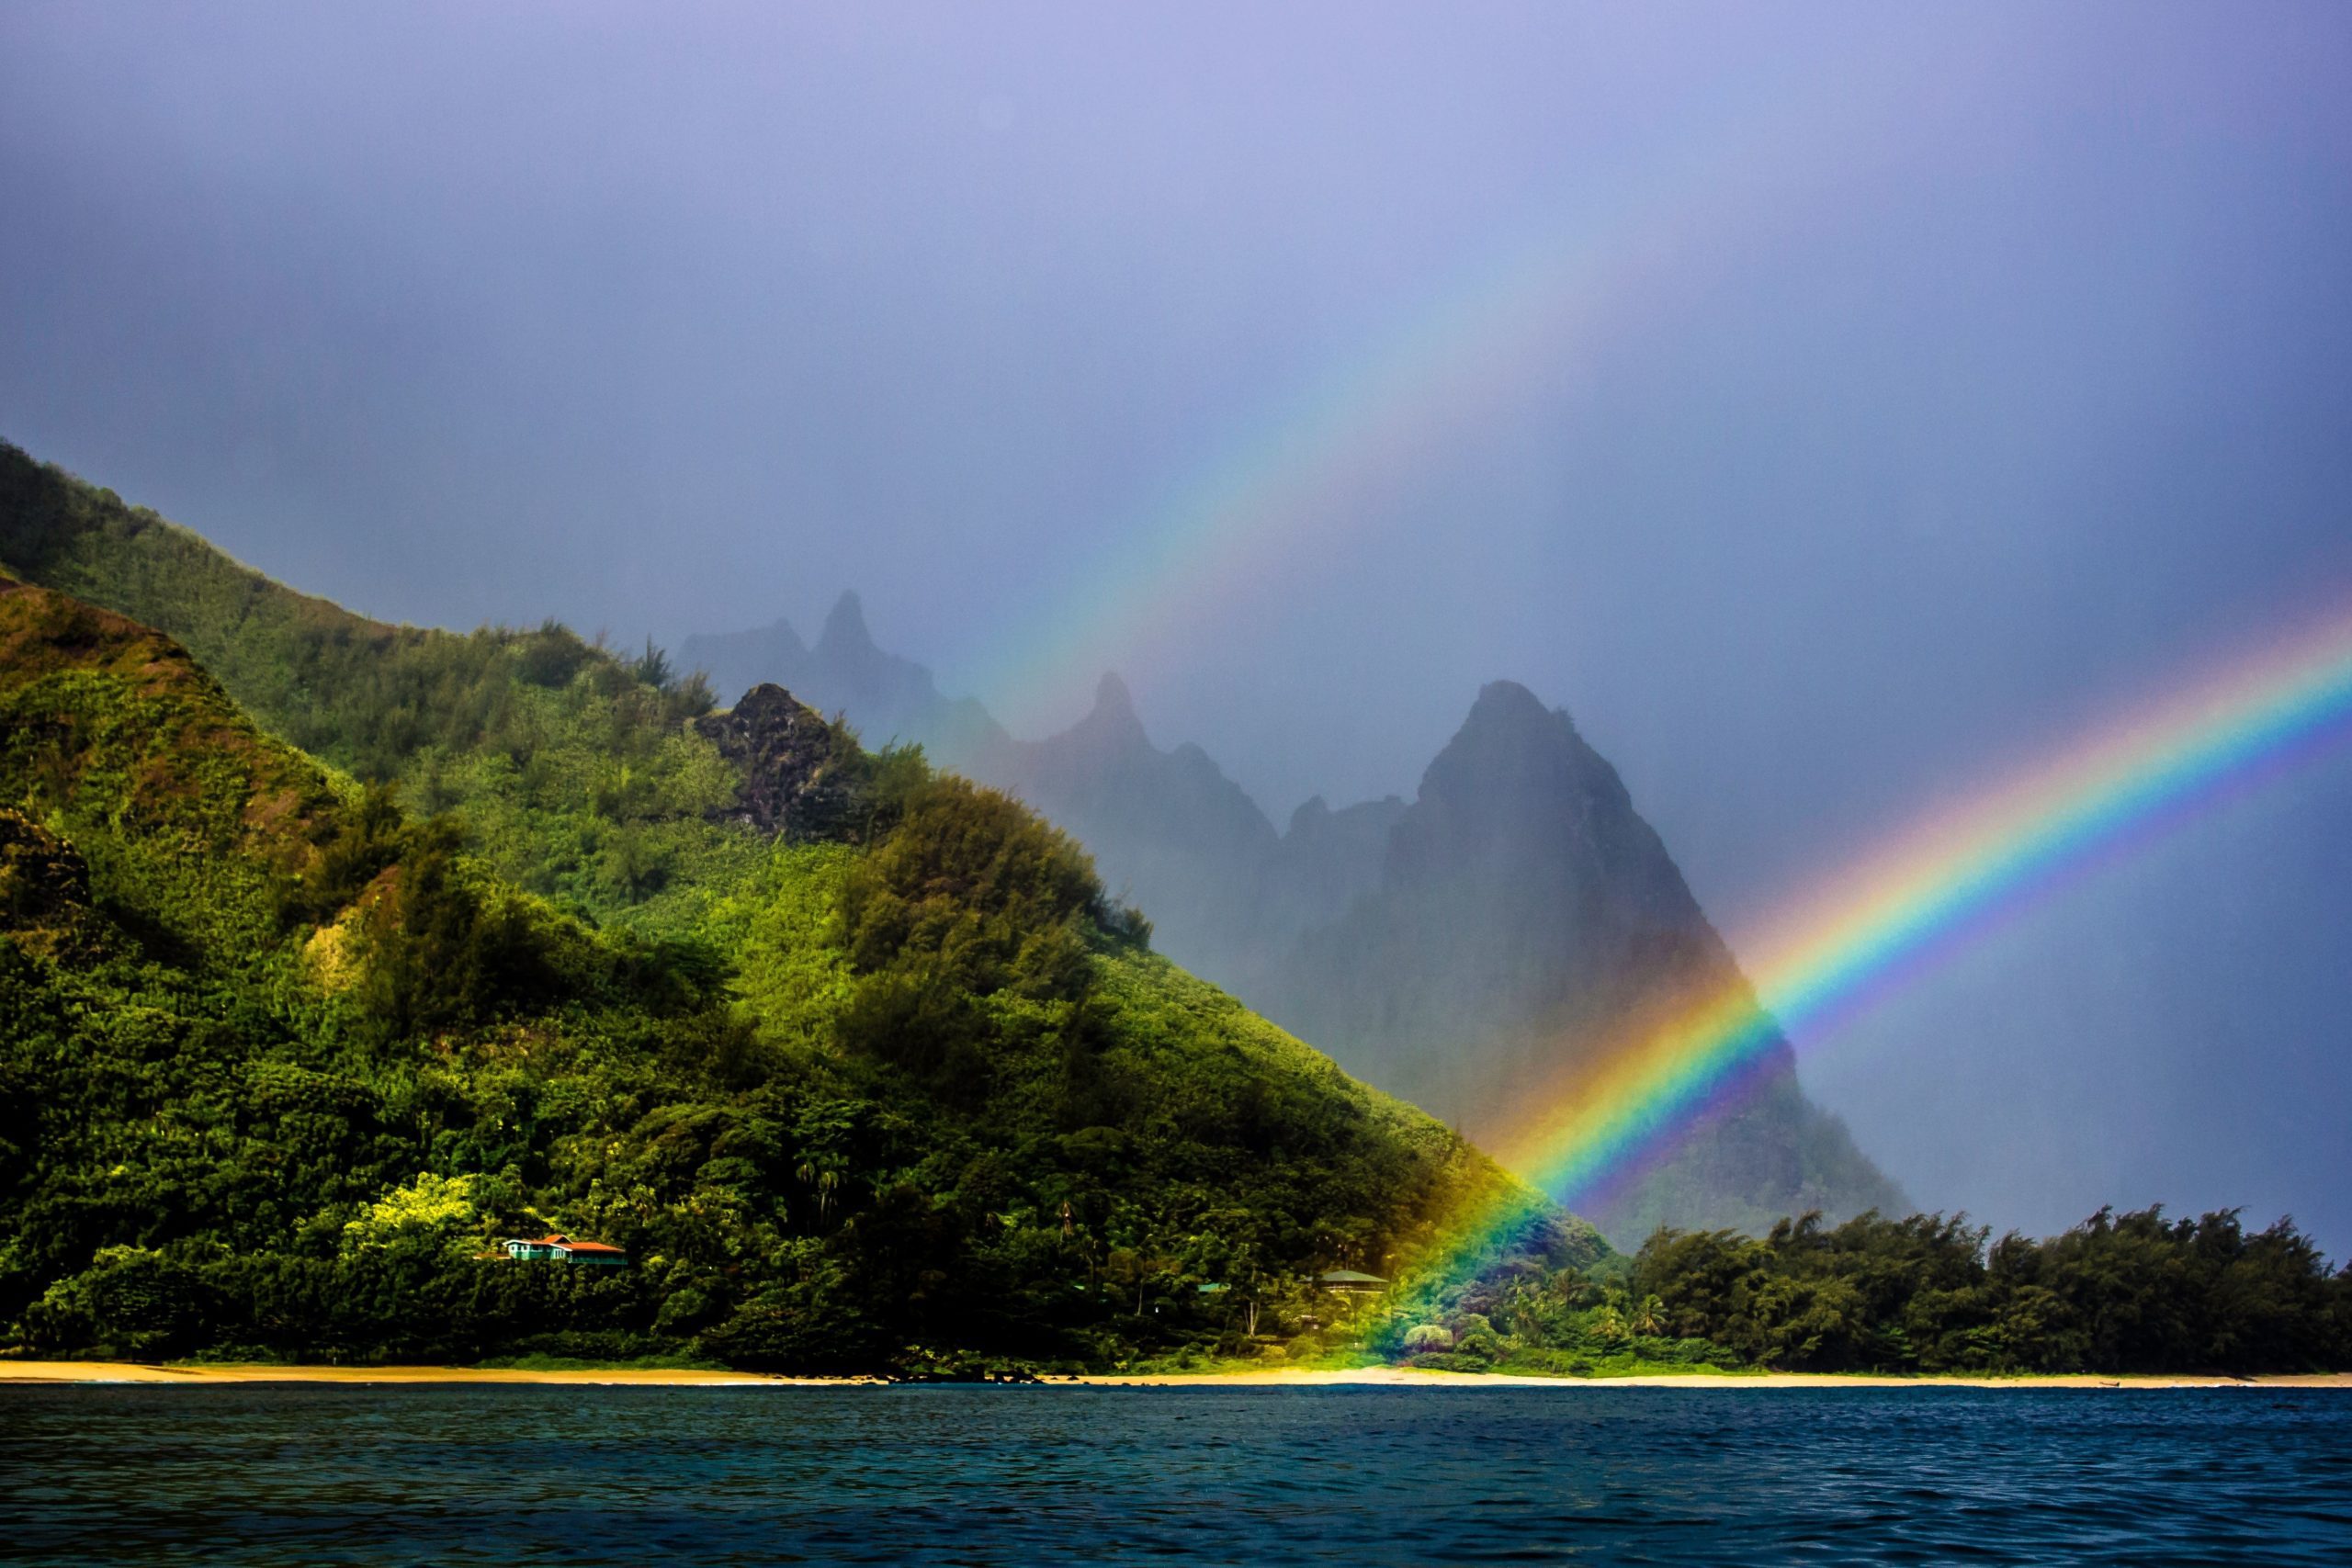 Rainfall in Kauai creates rainbows